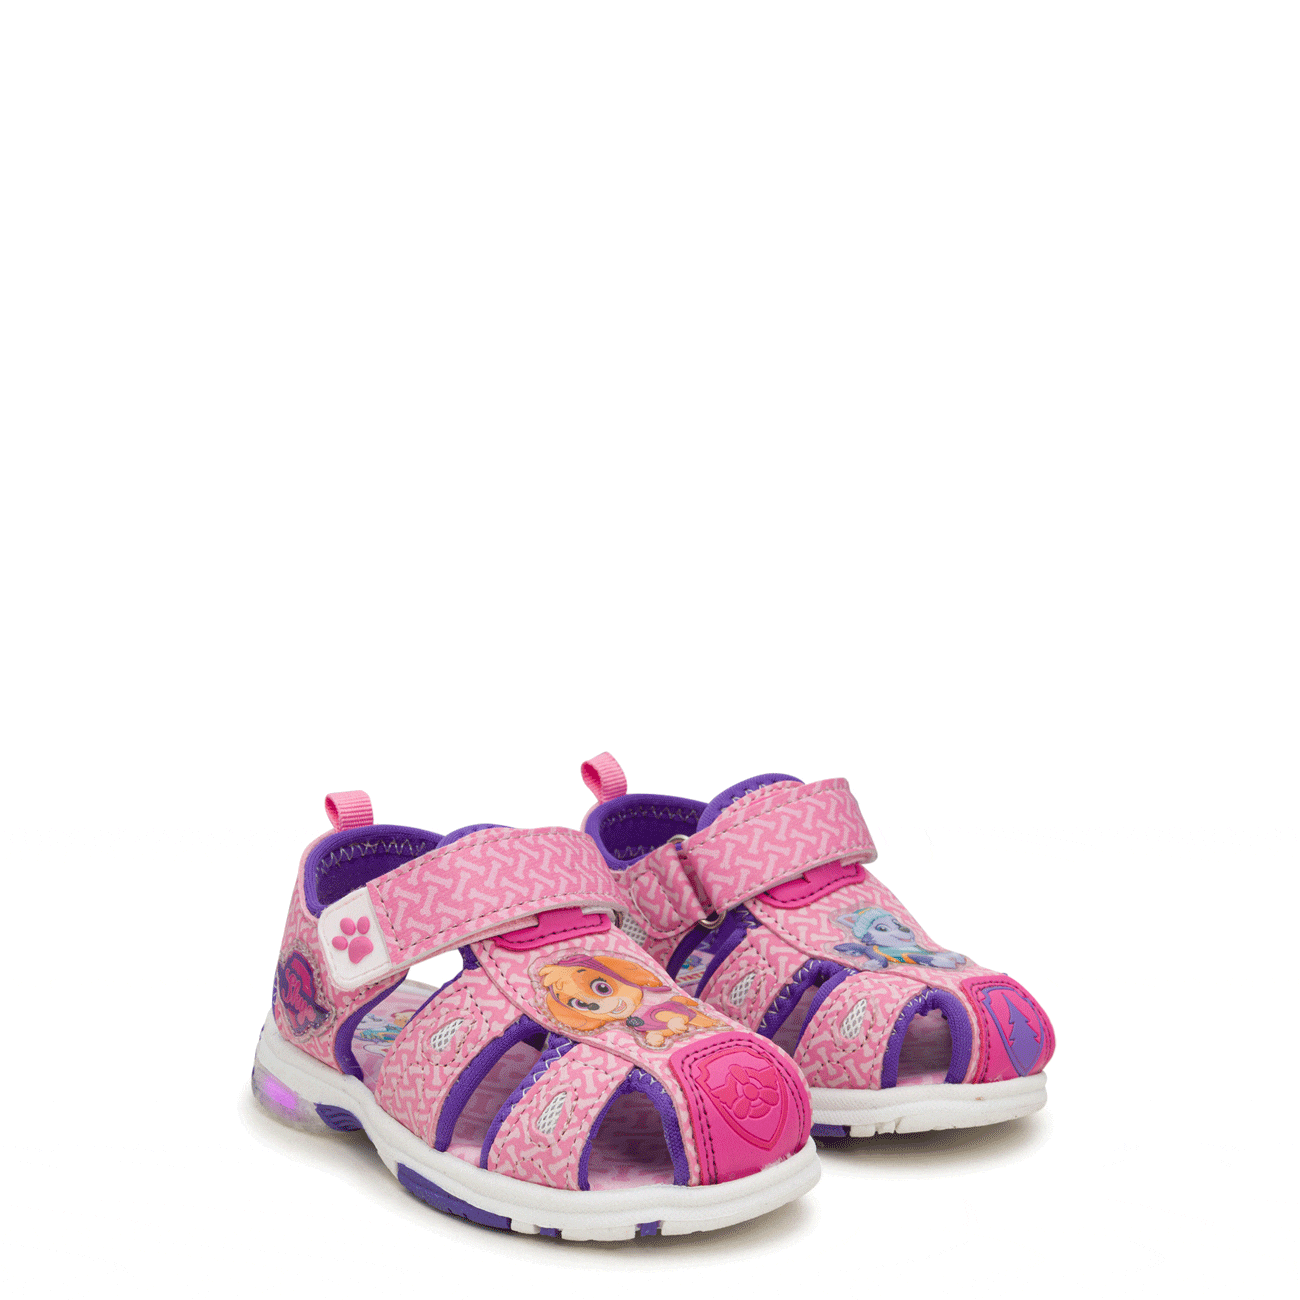 Toddler Girls' Light-Up Sandal